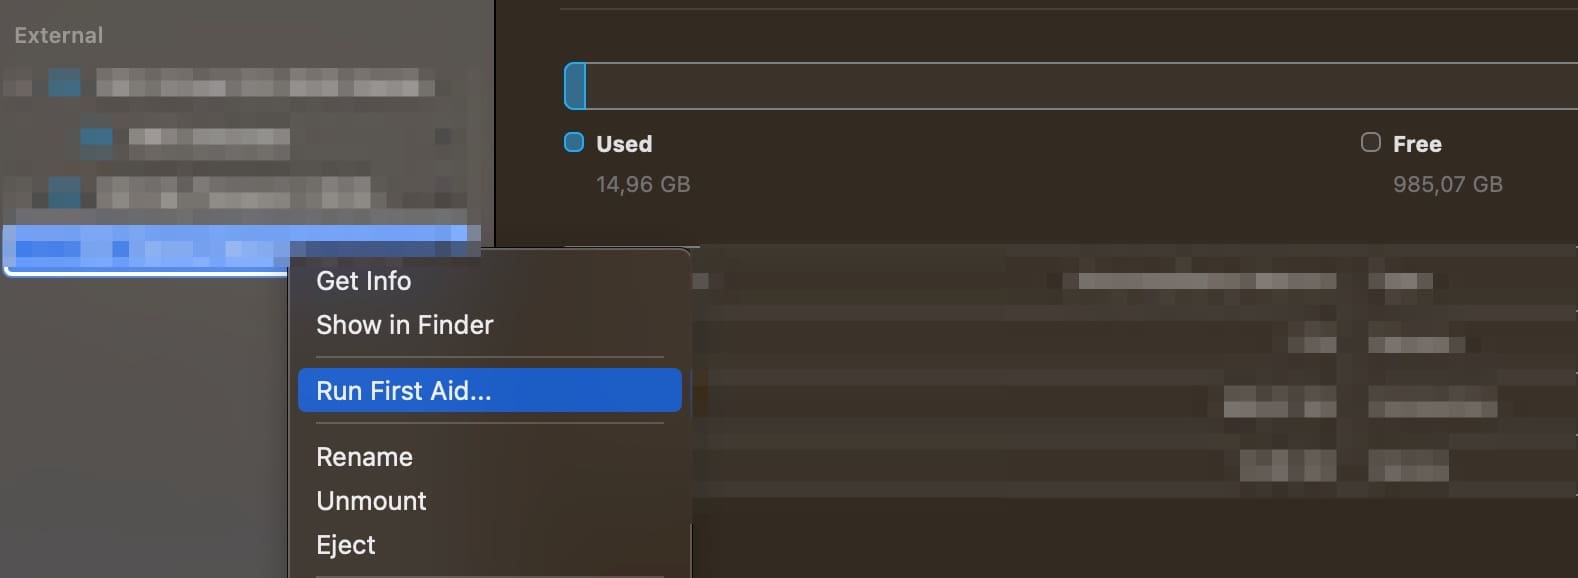 Run First Aid Mac Disk Utility Screenshot